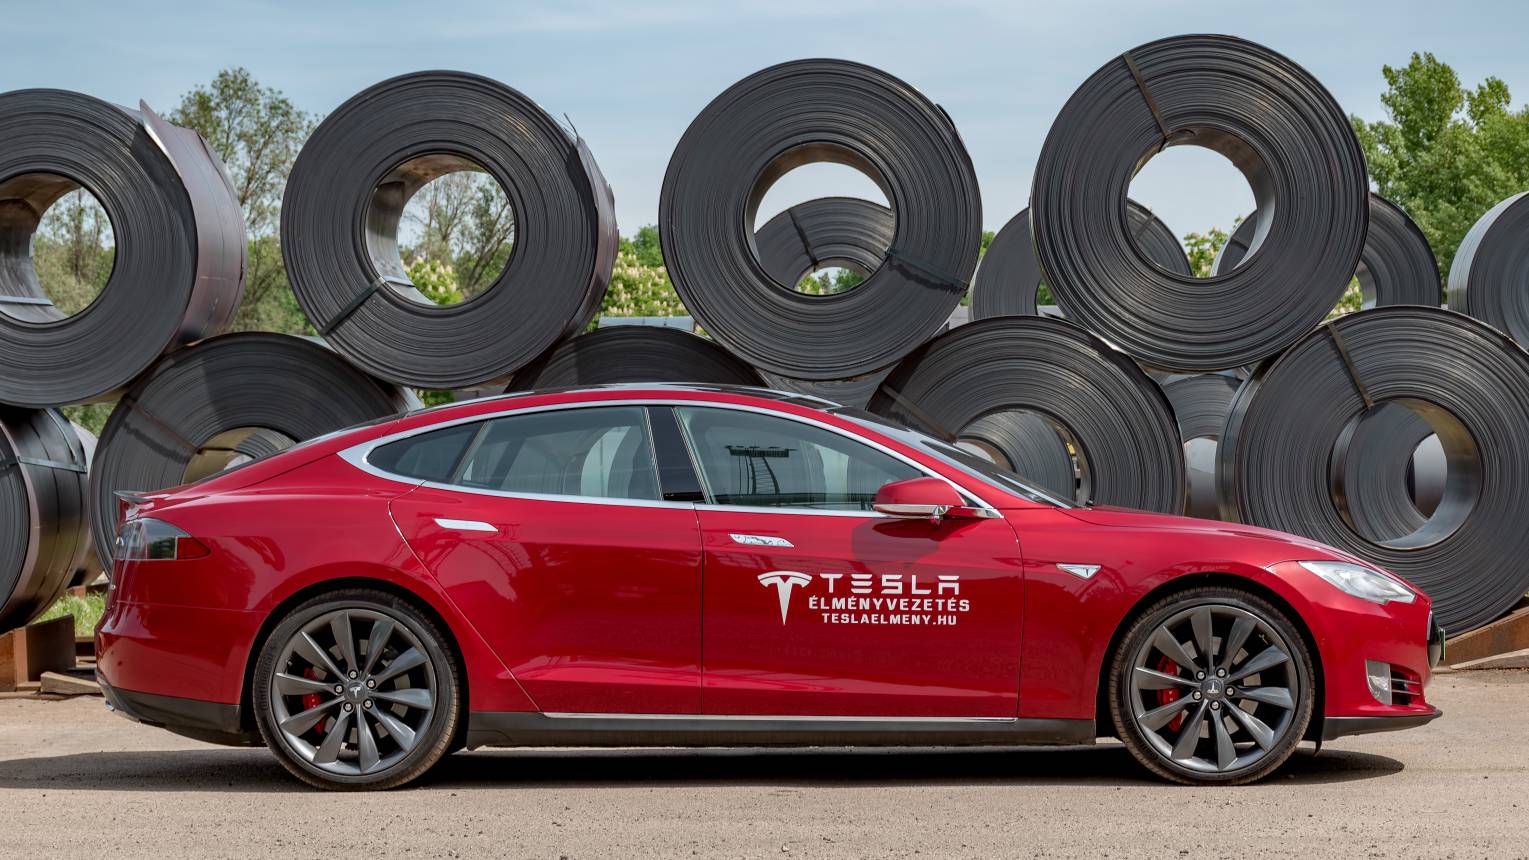 Tesla vezetés céges csapatnak 2